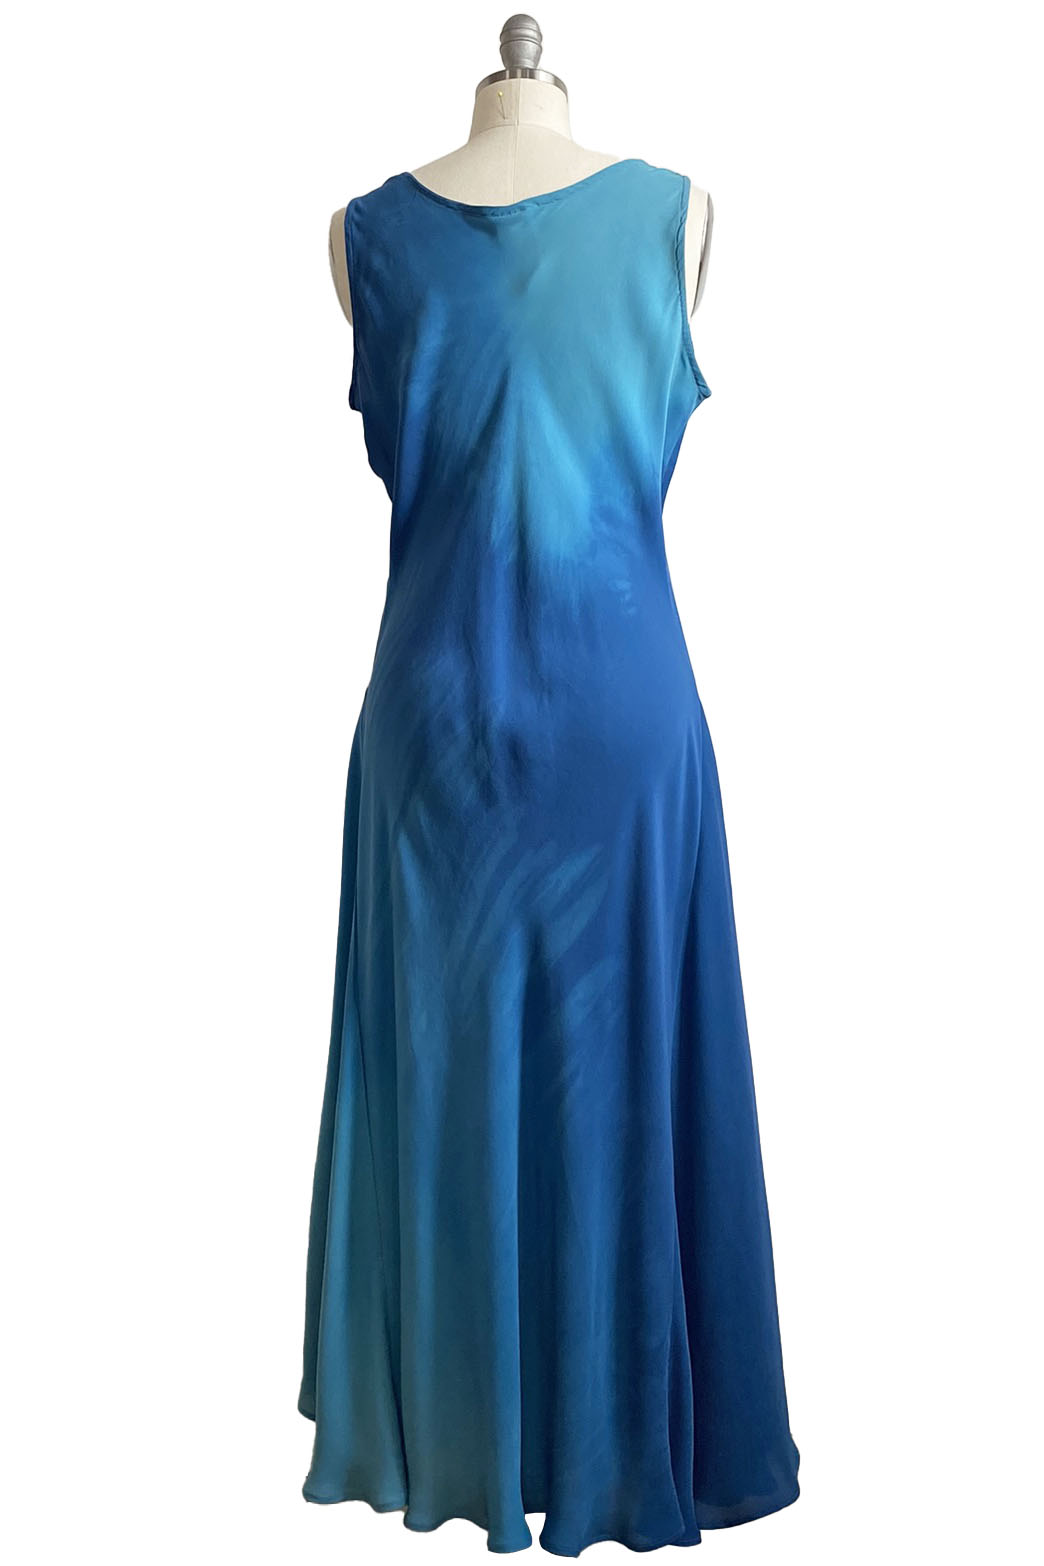 Fan Dress in Silk Georgette - Turquoise & Blue - L